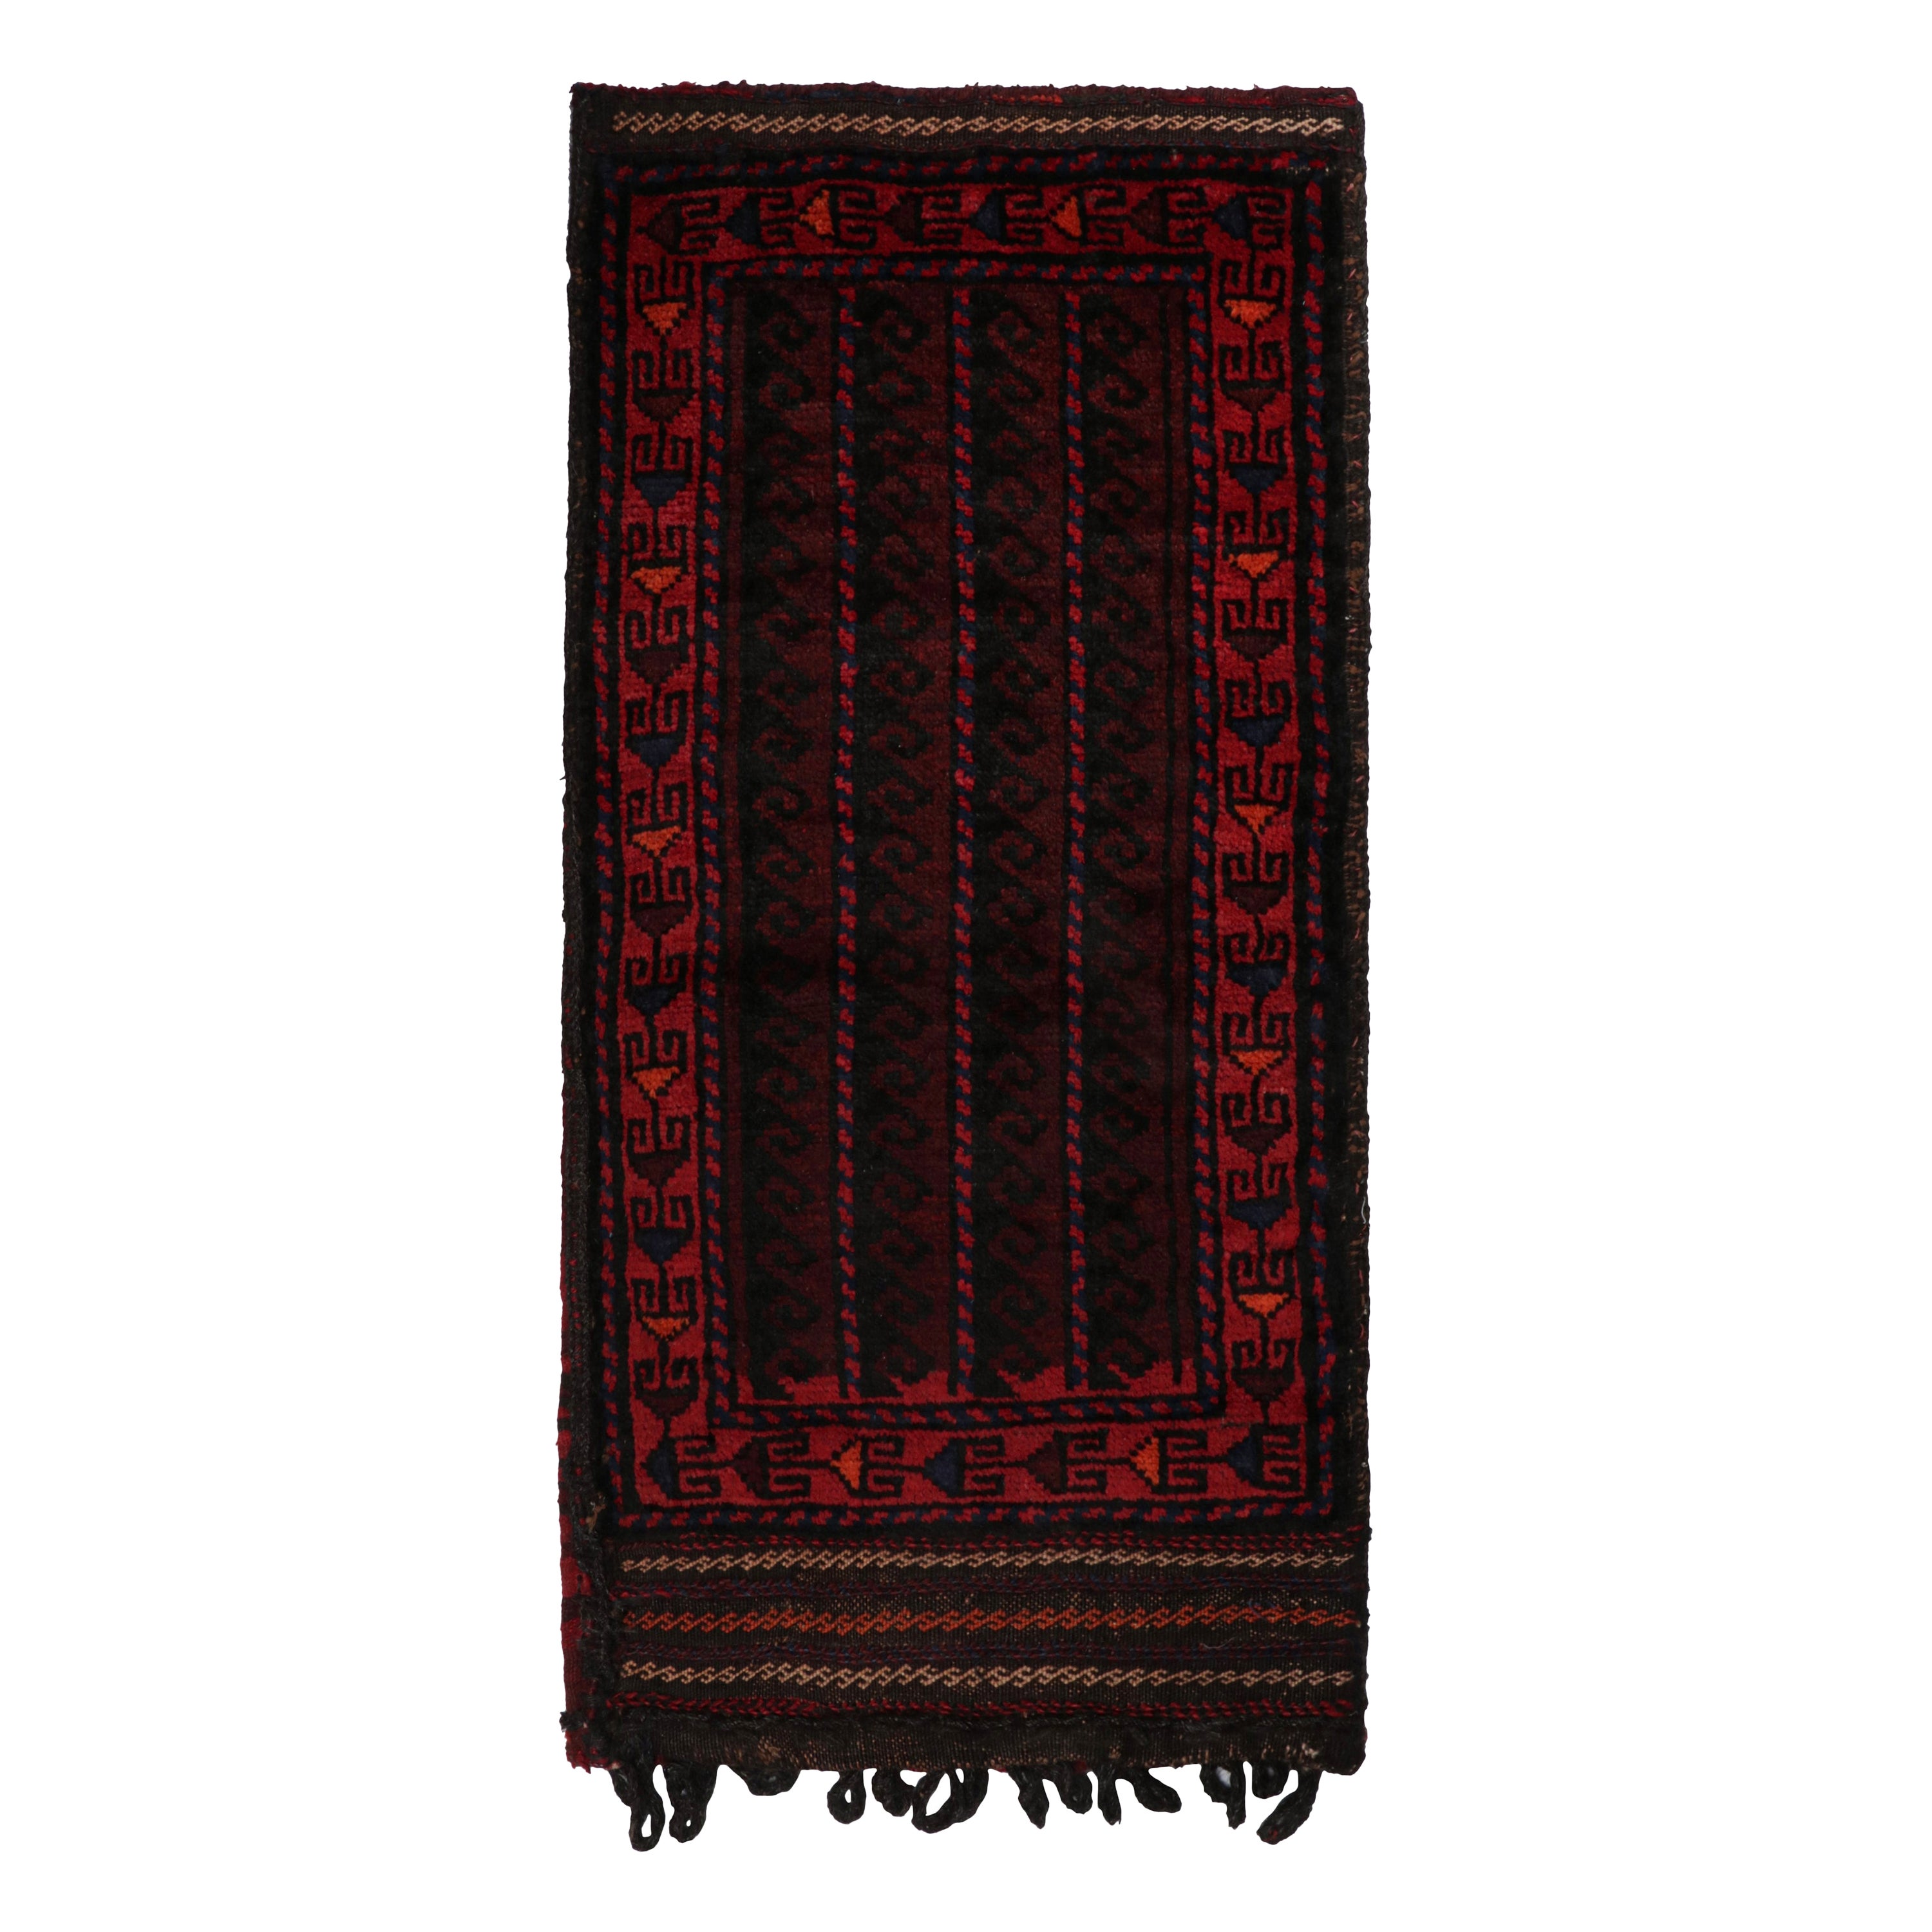 Tapis persan Baluch vintage à motifs rouges, bleus et noirs de Rug & Kilim